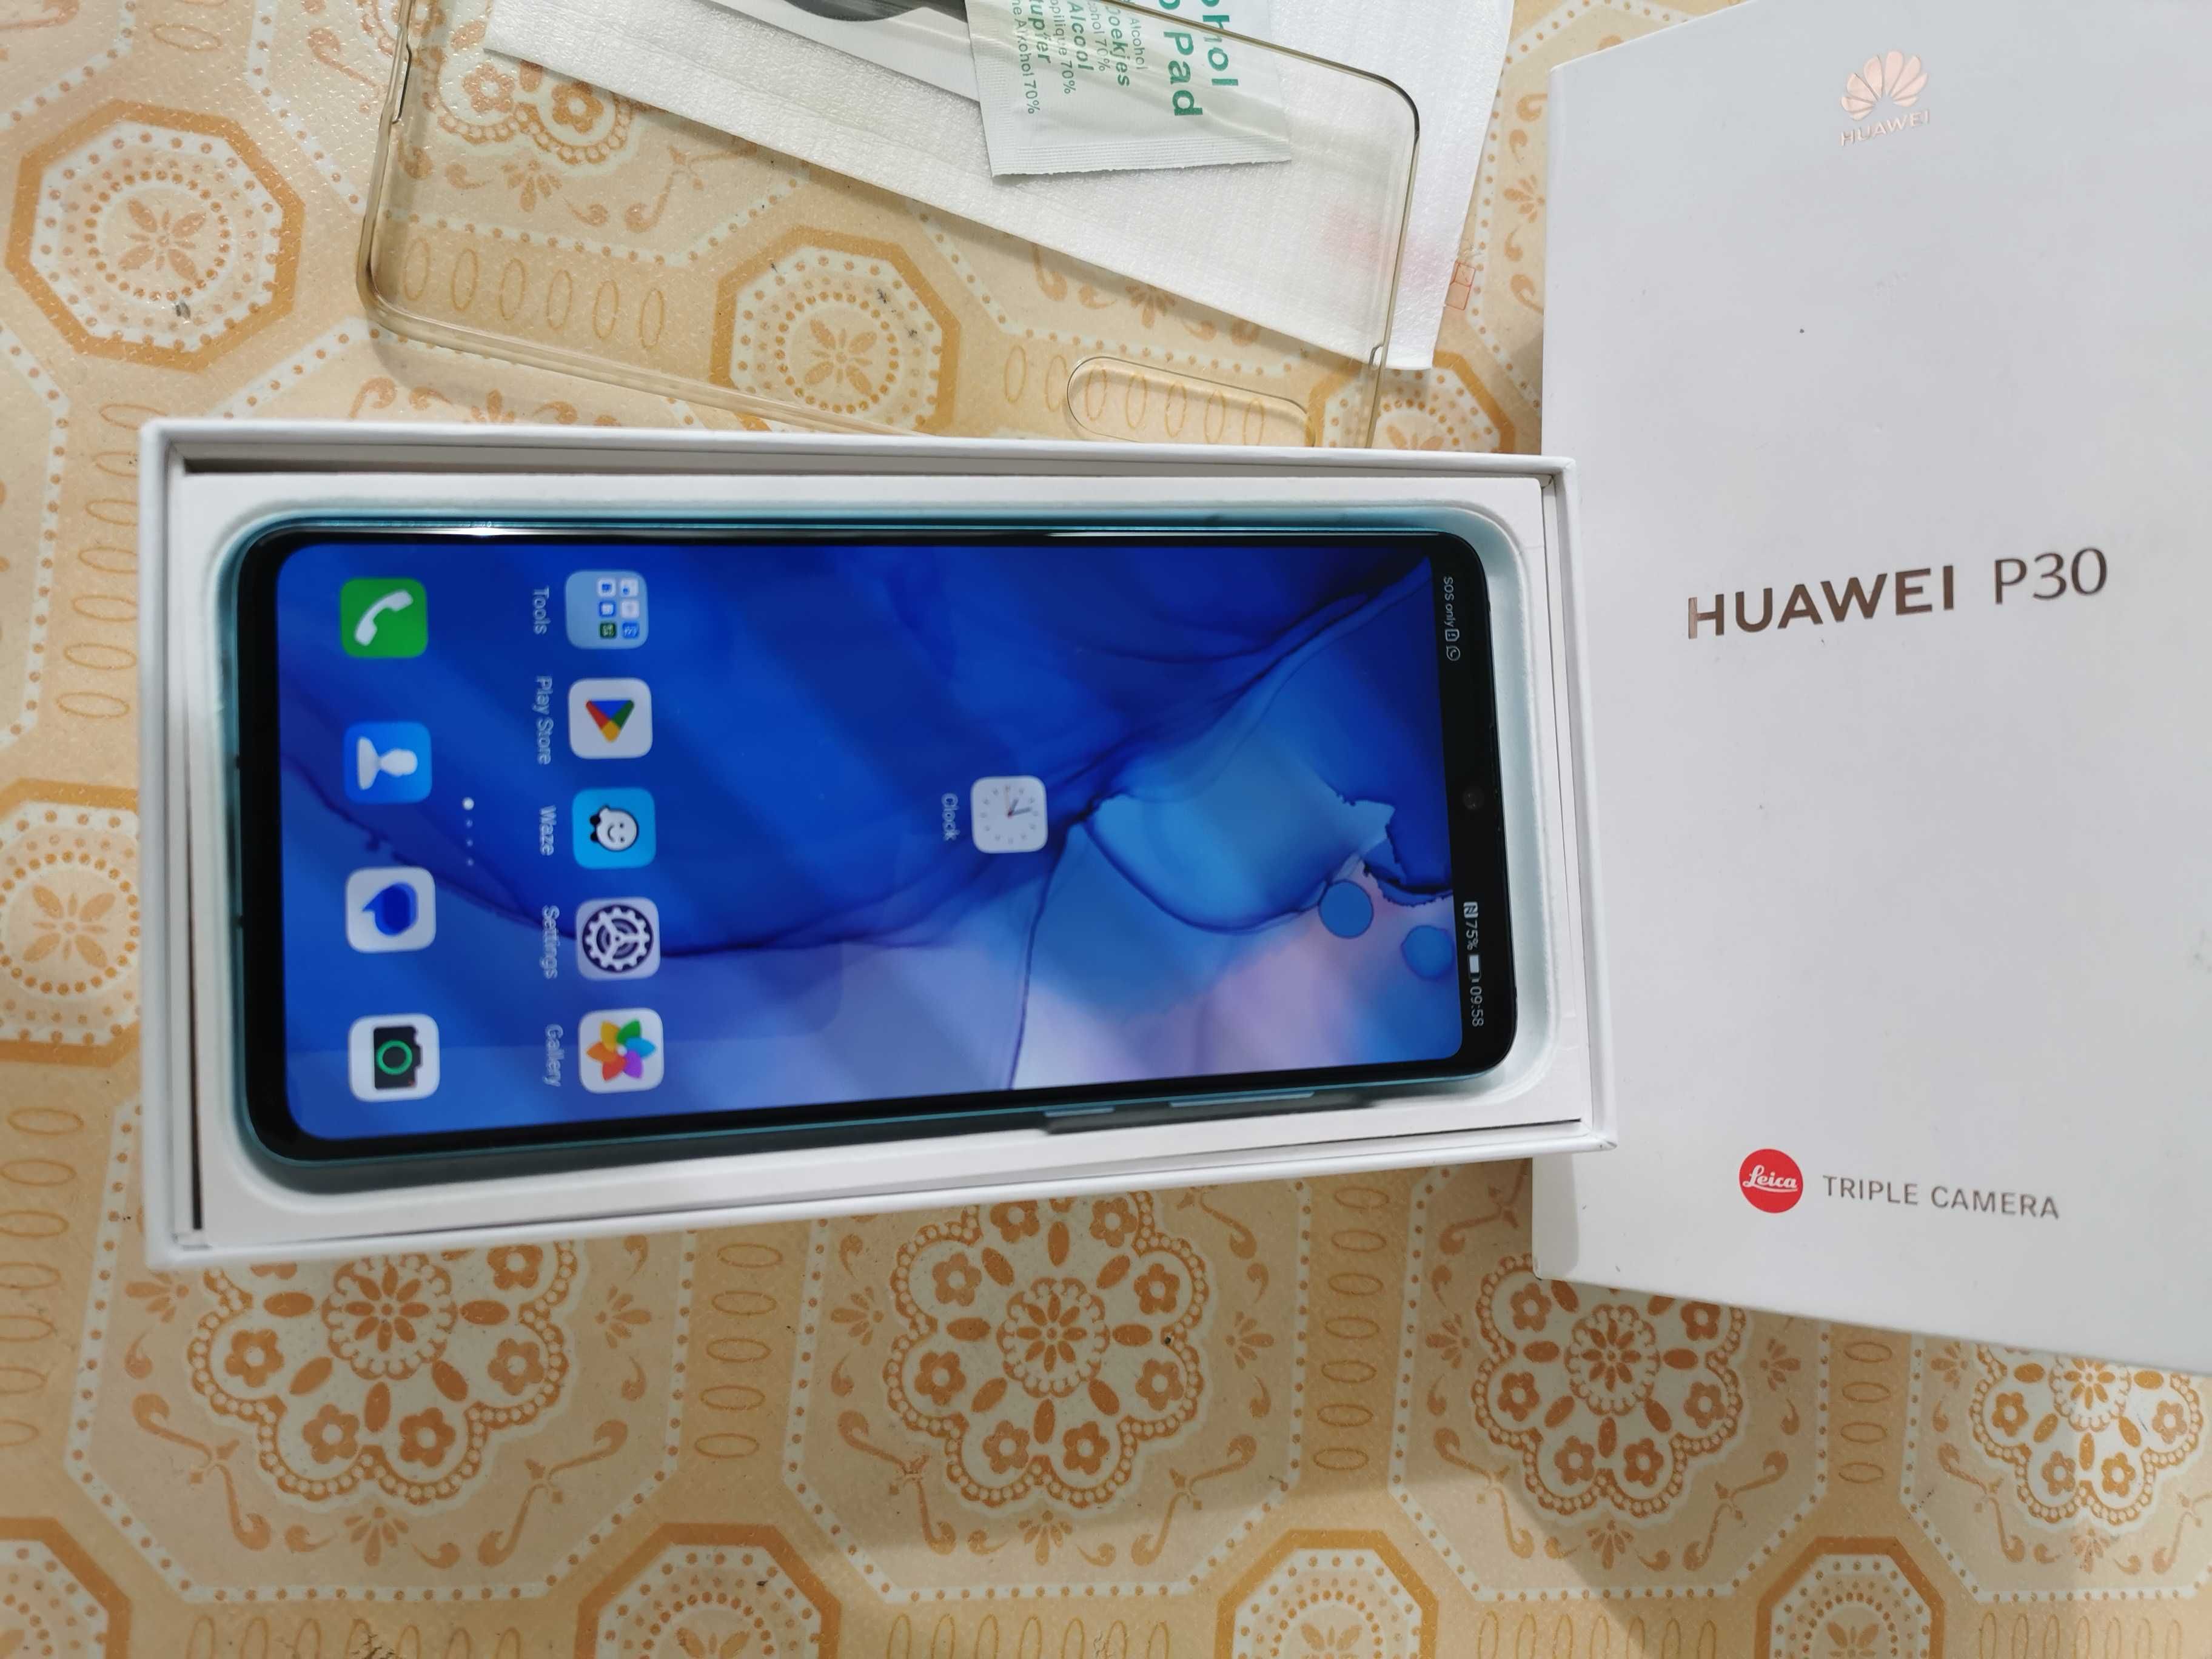 Vand telefon mobil Huawei P30, Dual SIM, 128GB, Aurora Blue, 500 lei!